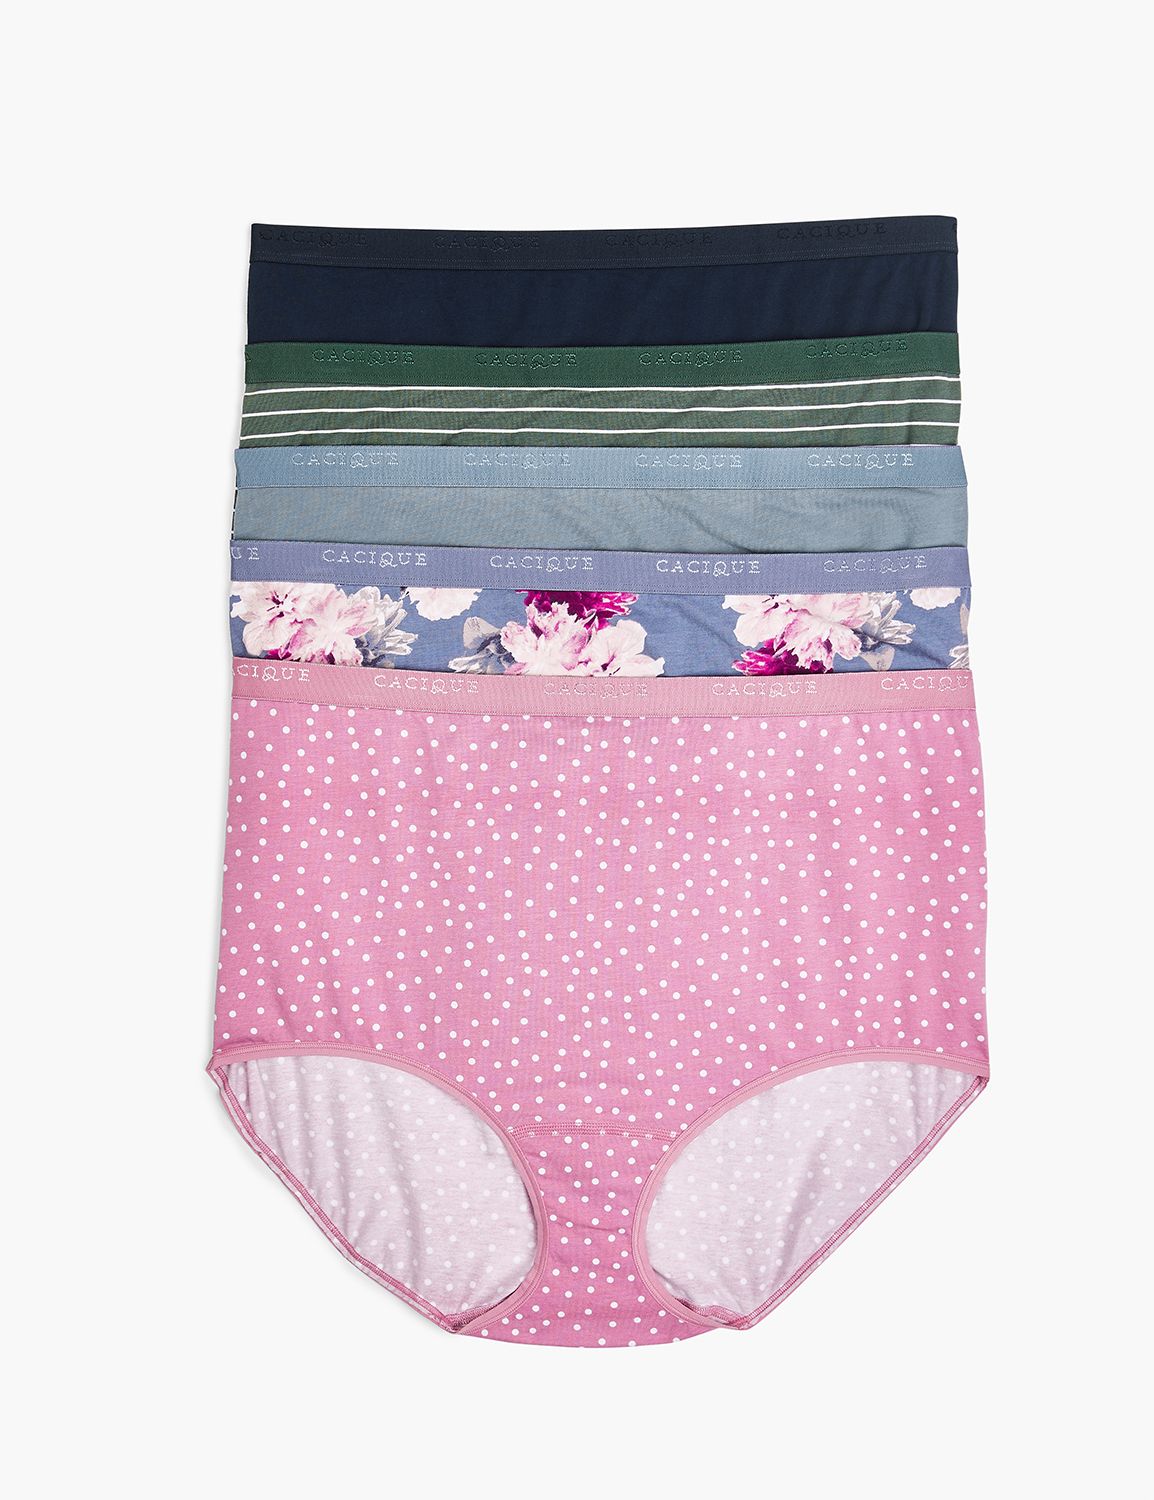  5 Pack Women's Underwear High Waisted Briefs Panties